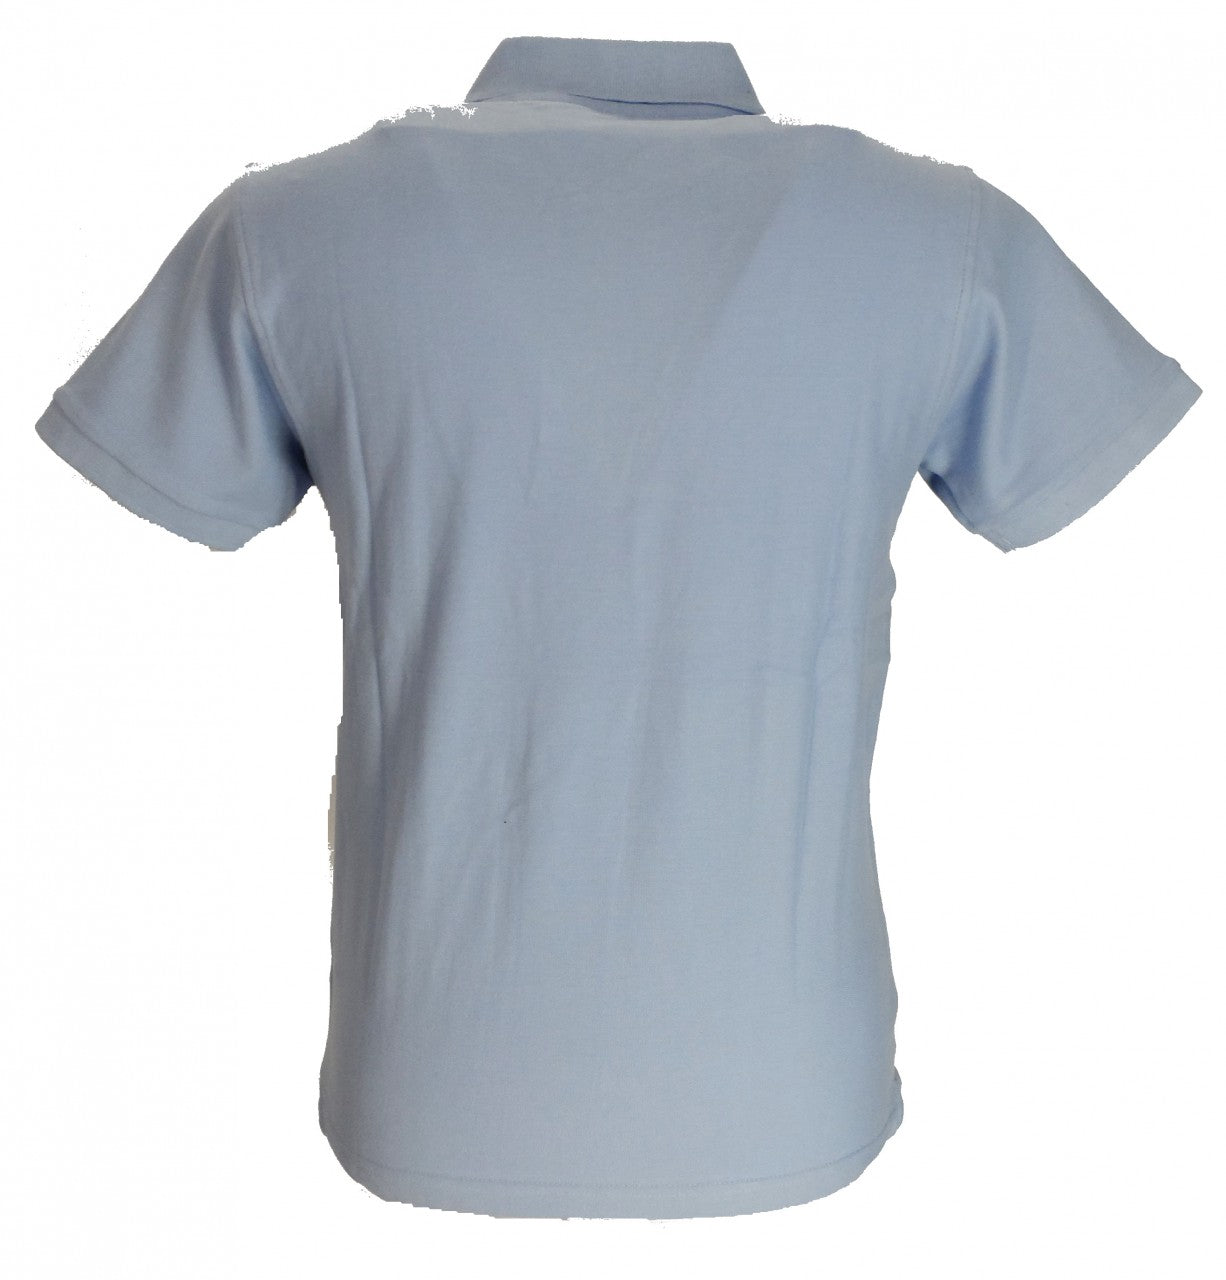 Mod Polo Shirts Relco celeste/azul marino